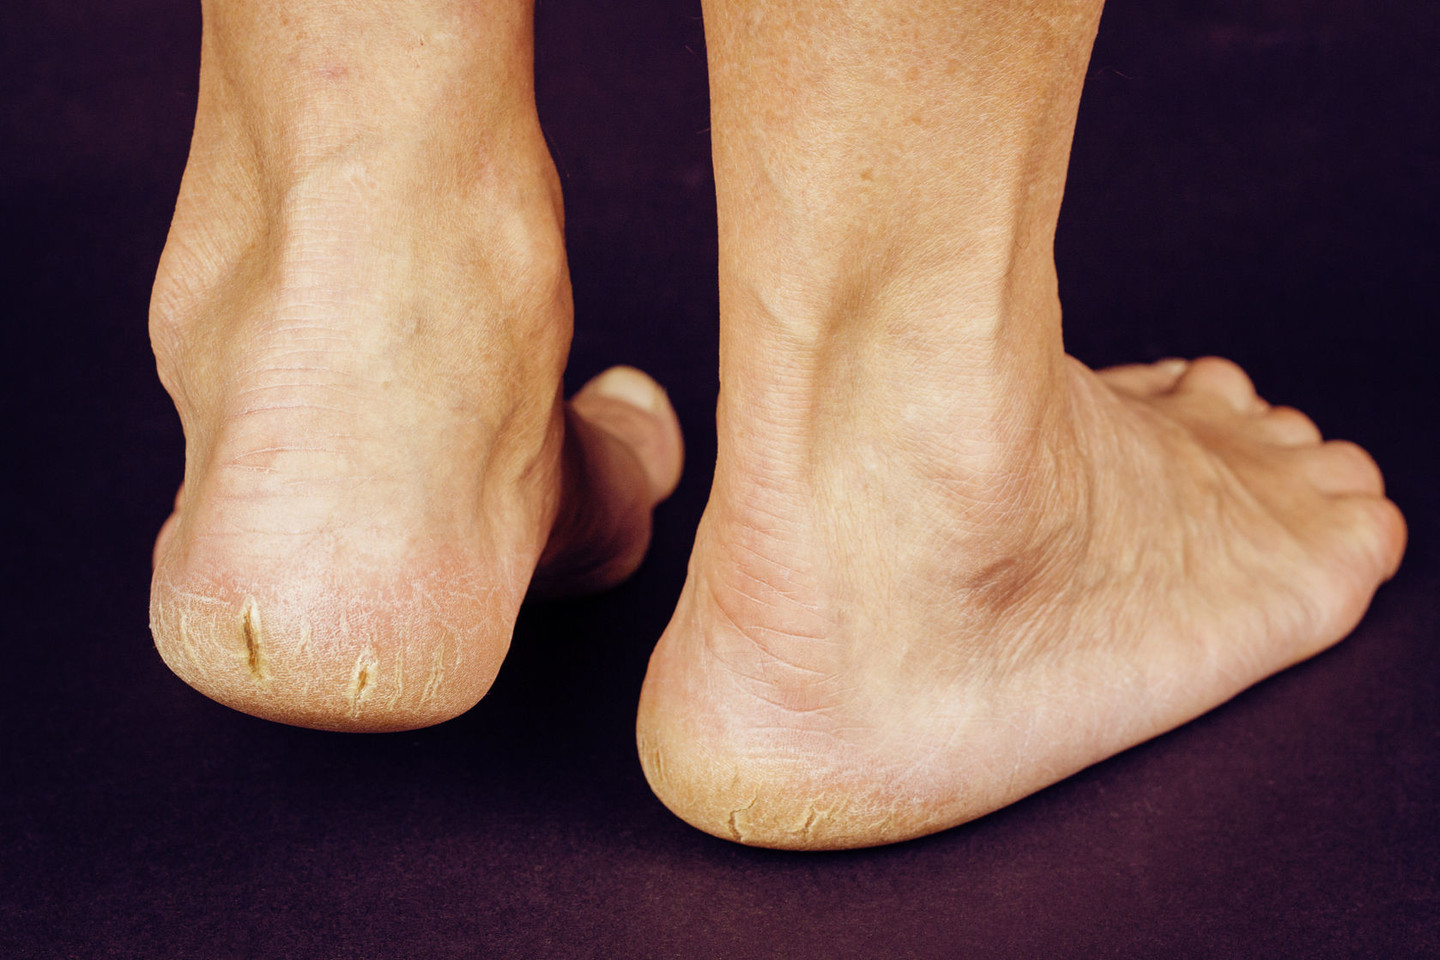  Tinkamai neprižiūrima pėdų oda tampa lengviau pažeidžiama grybelinės infekcijos.<br> 123rf.com nuotr.